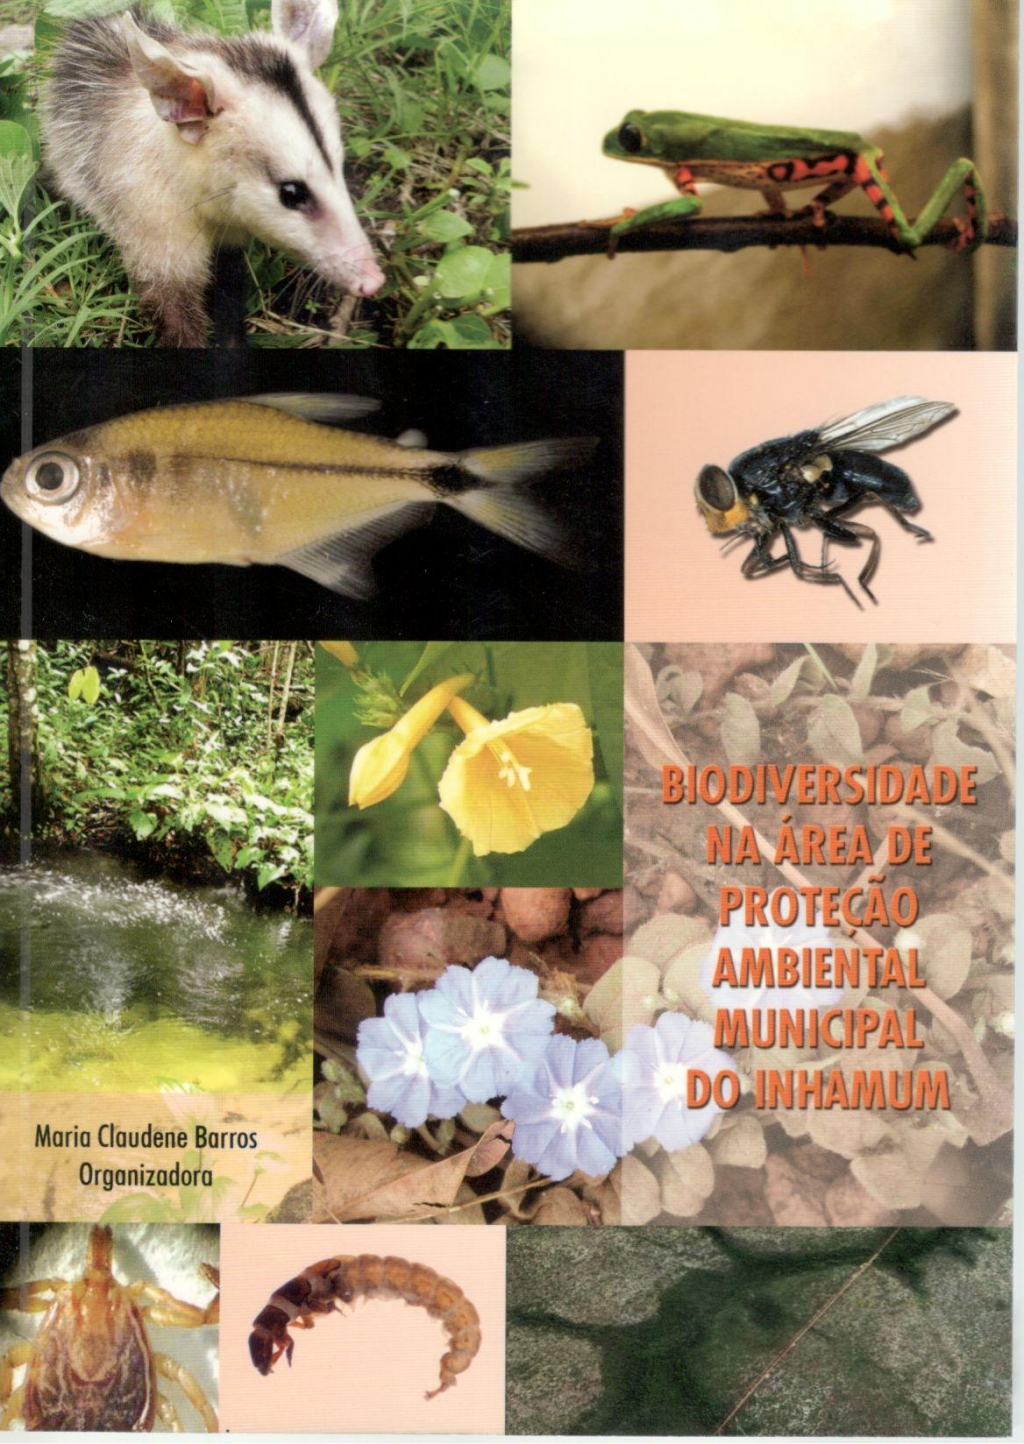 Biodiversidade na área de proteção ambiental municipal do Inhamum (Esgotado)